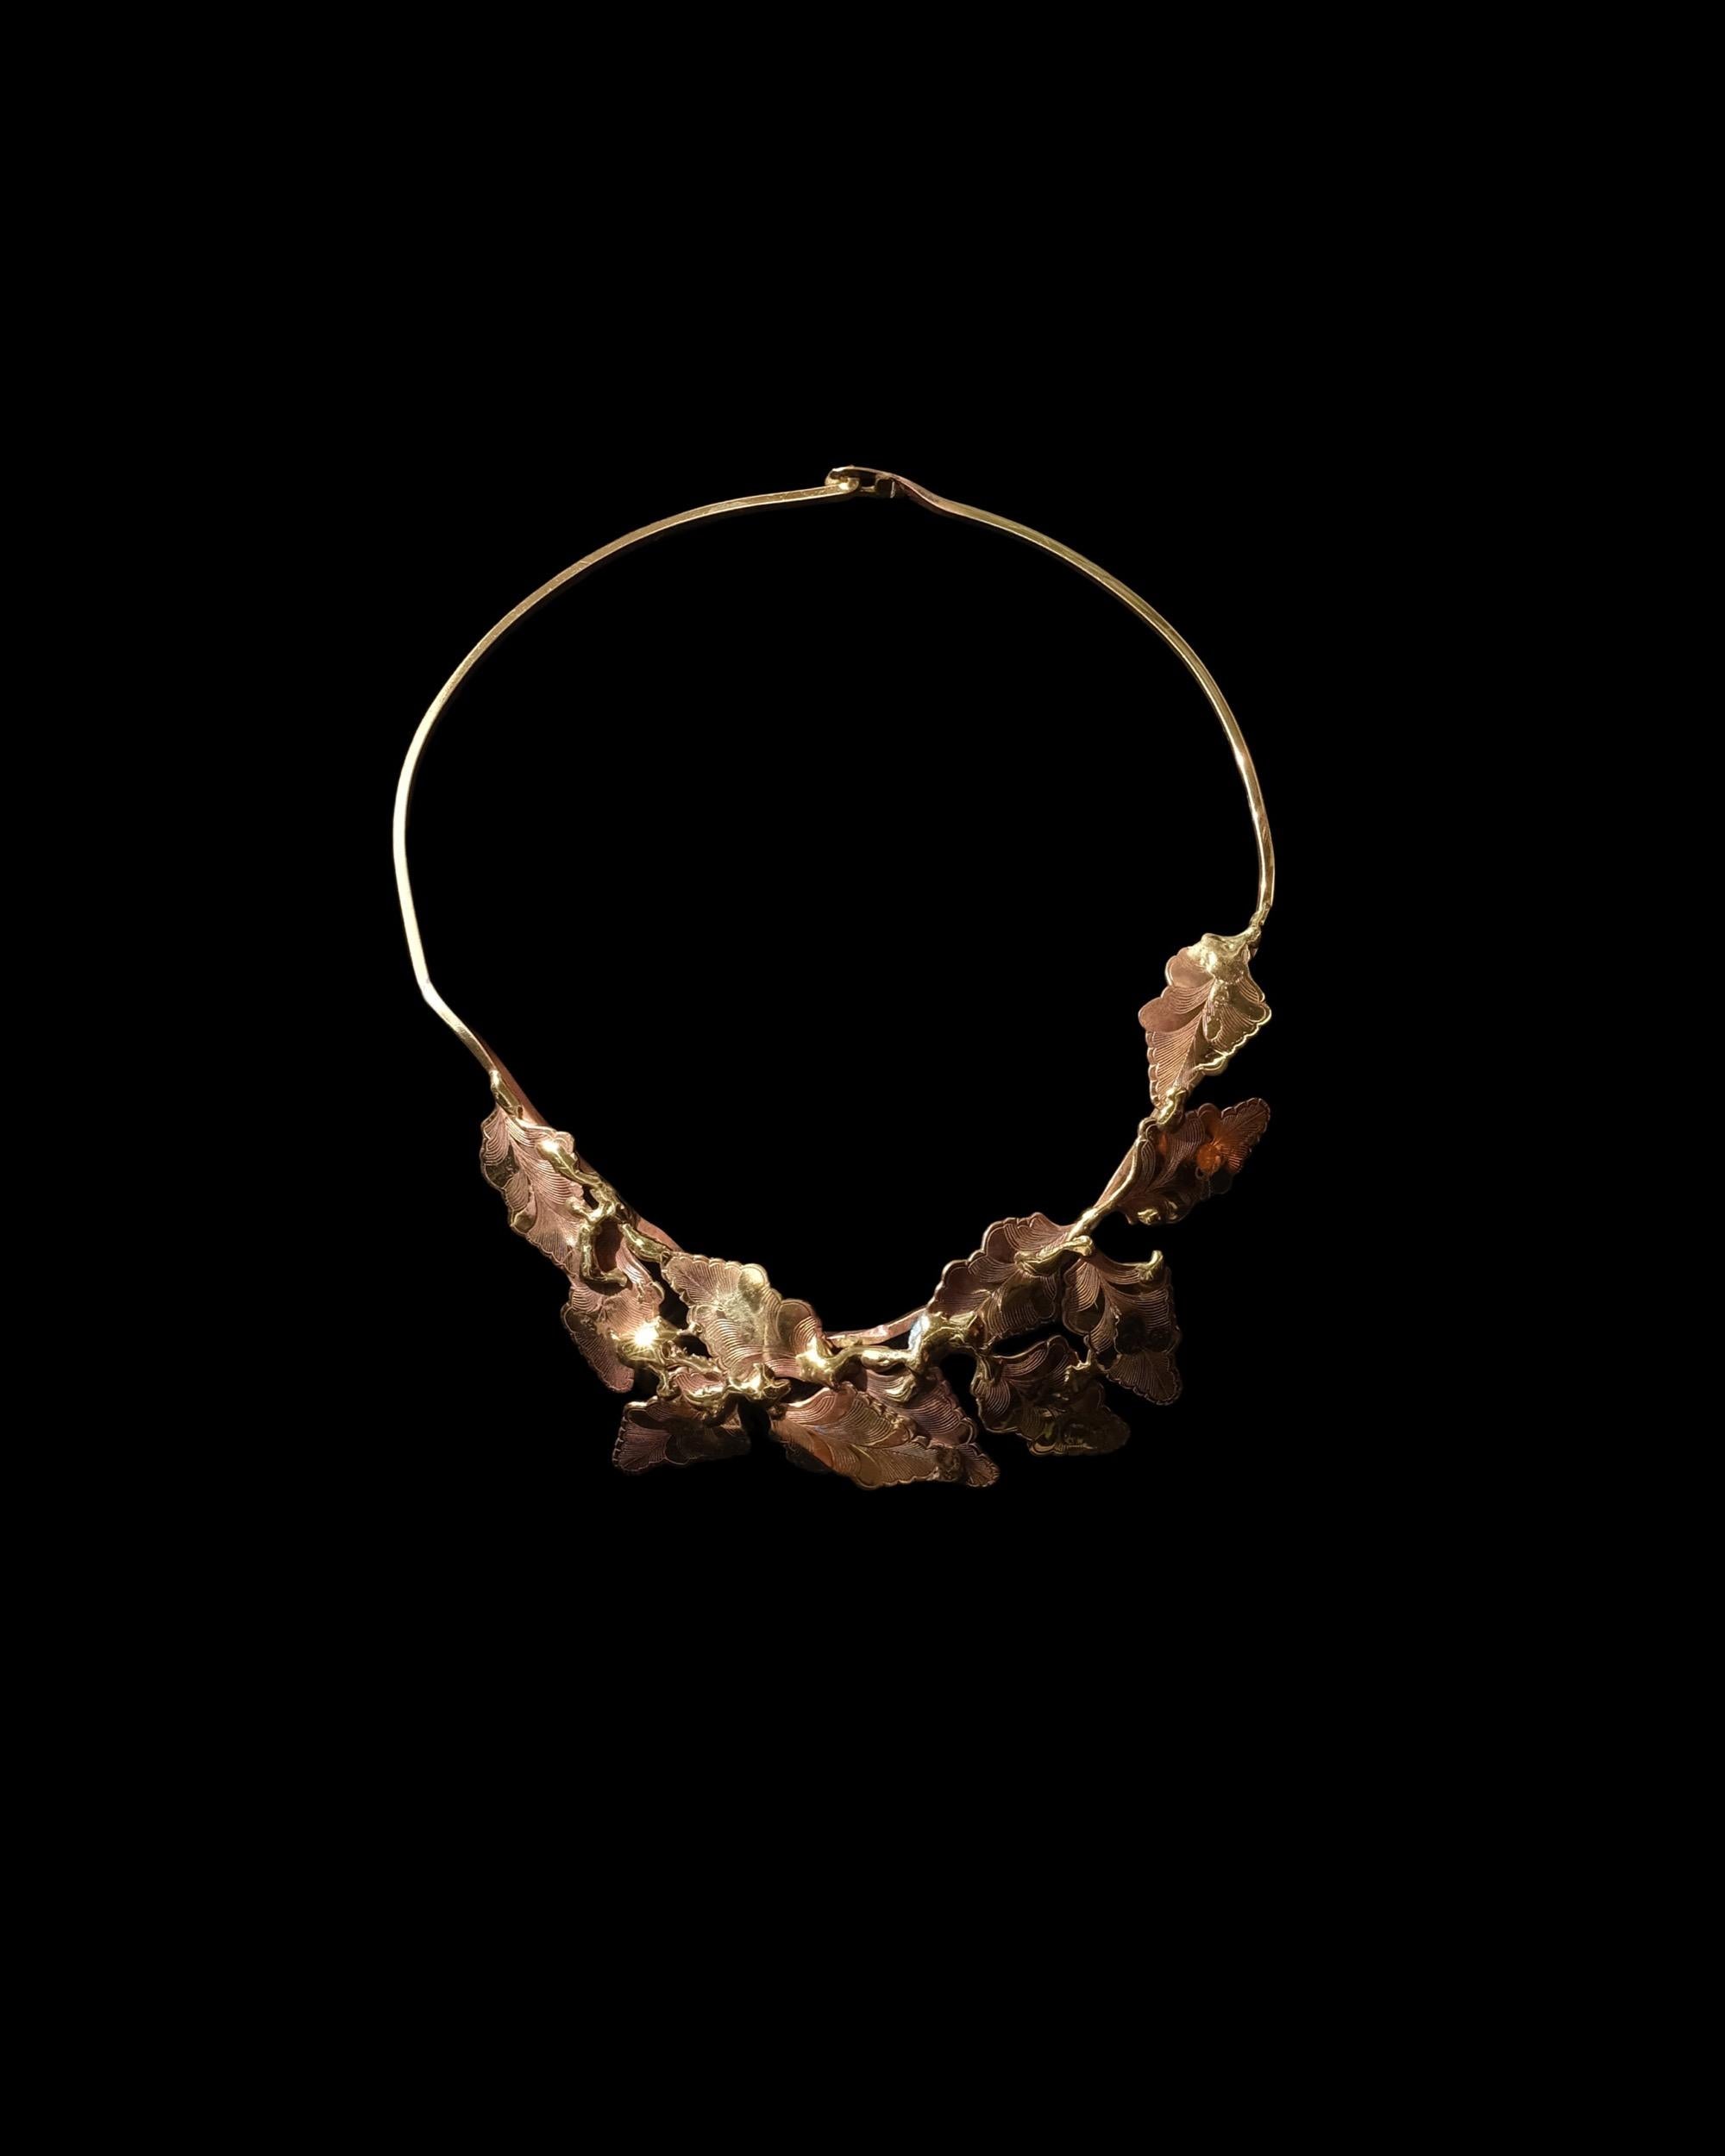 Modernist Brutalist Hand-Forged Brass Artist Made Collar Choker Necklace